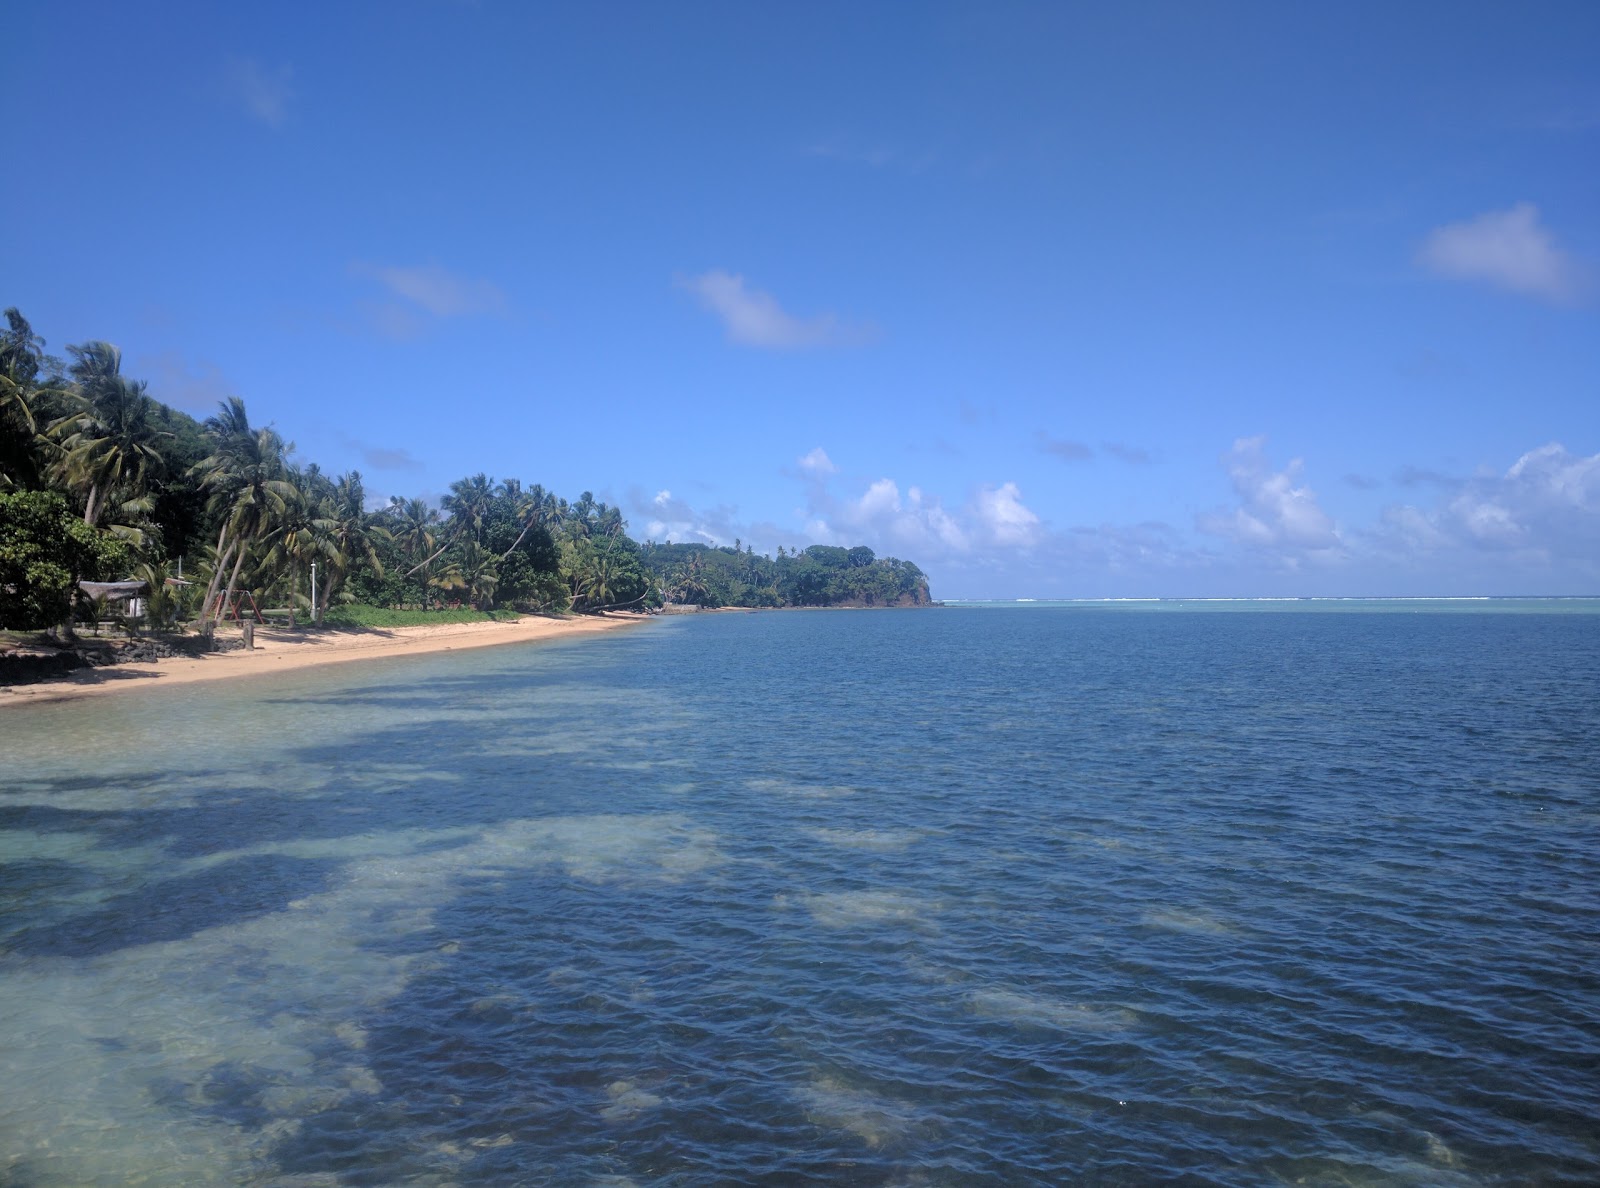 Zdjęcie Palau East Beach z powierzchnią jasny piasek